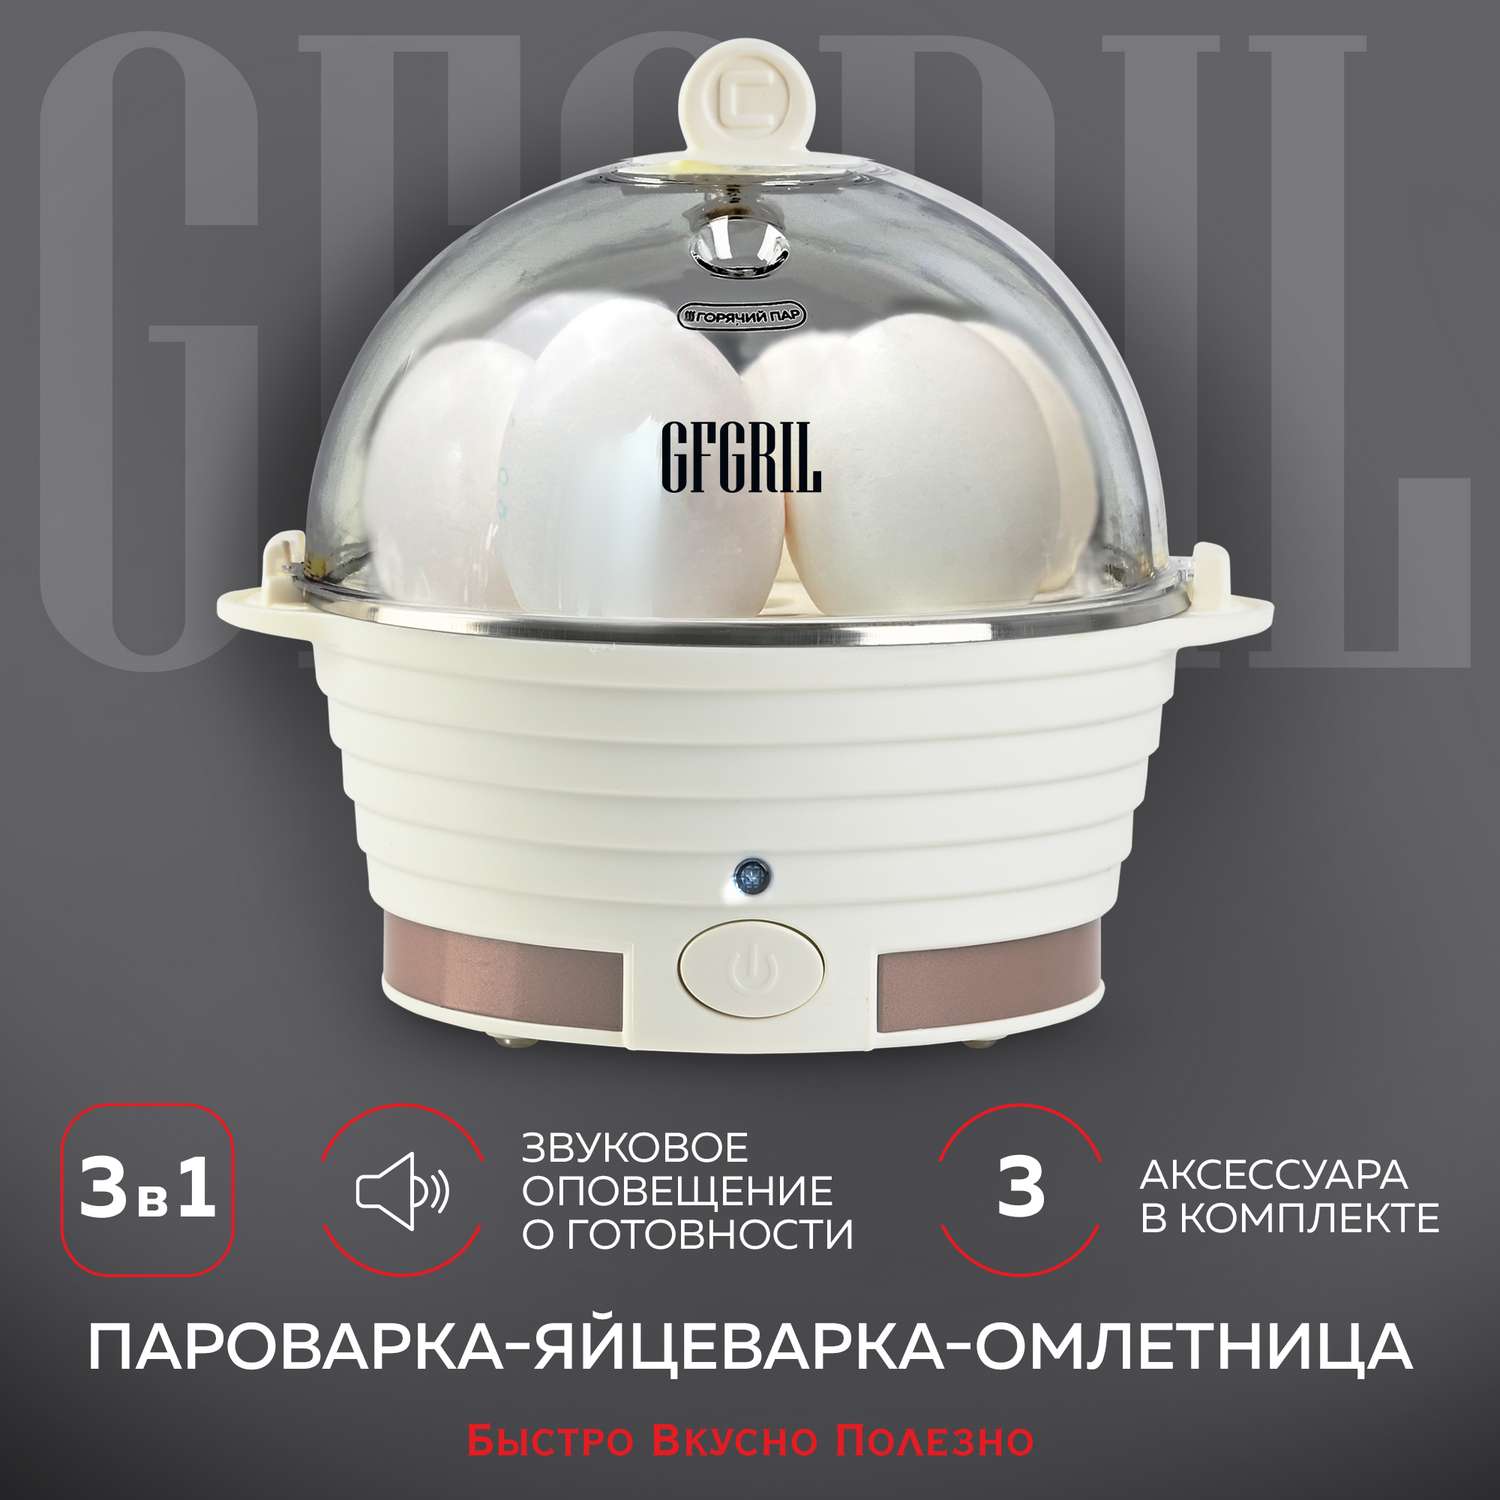 Яйцеварка-пароварка GFGRIL Электрическая 3 в 1 GFS-3 - фото 1